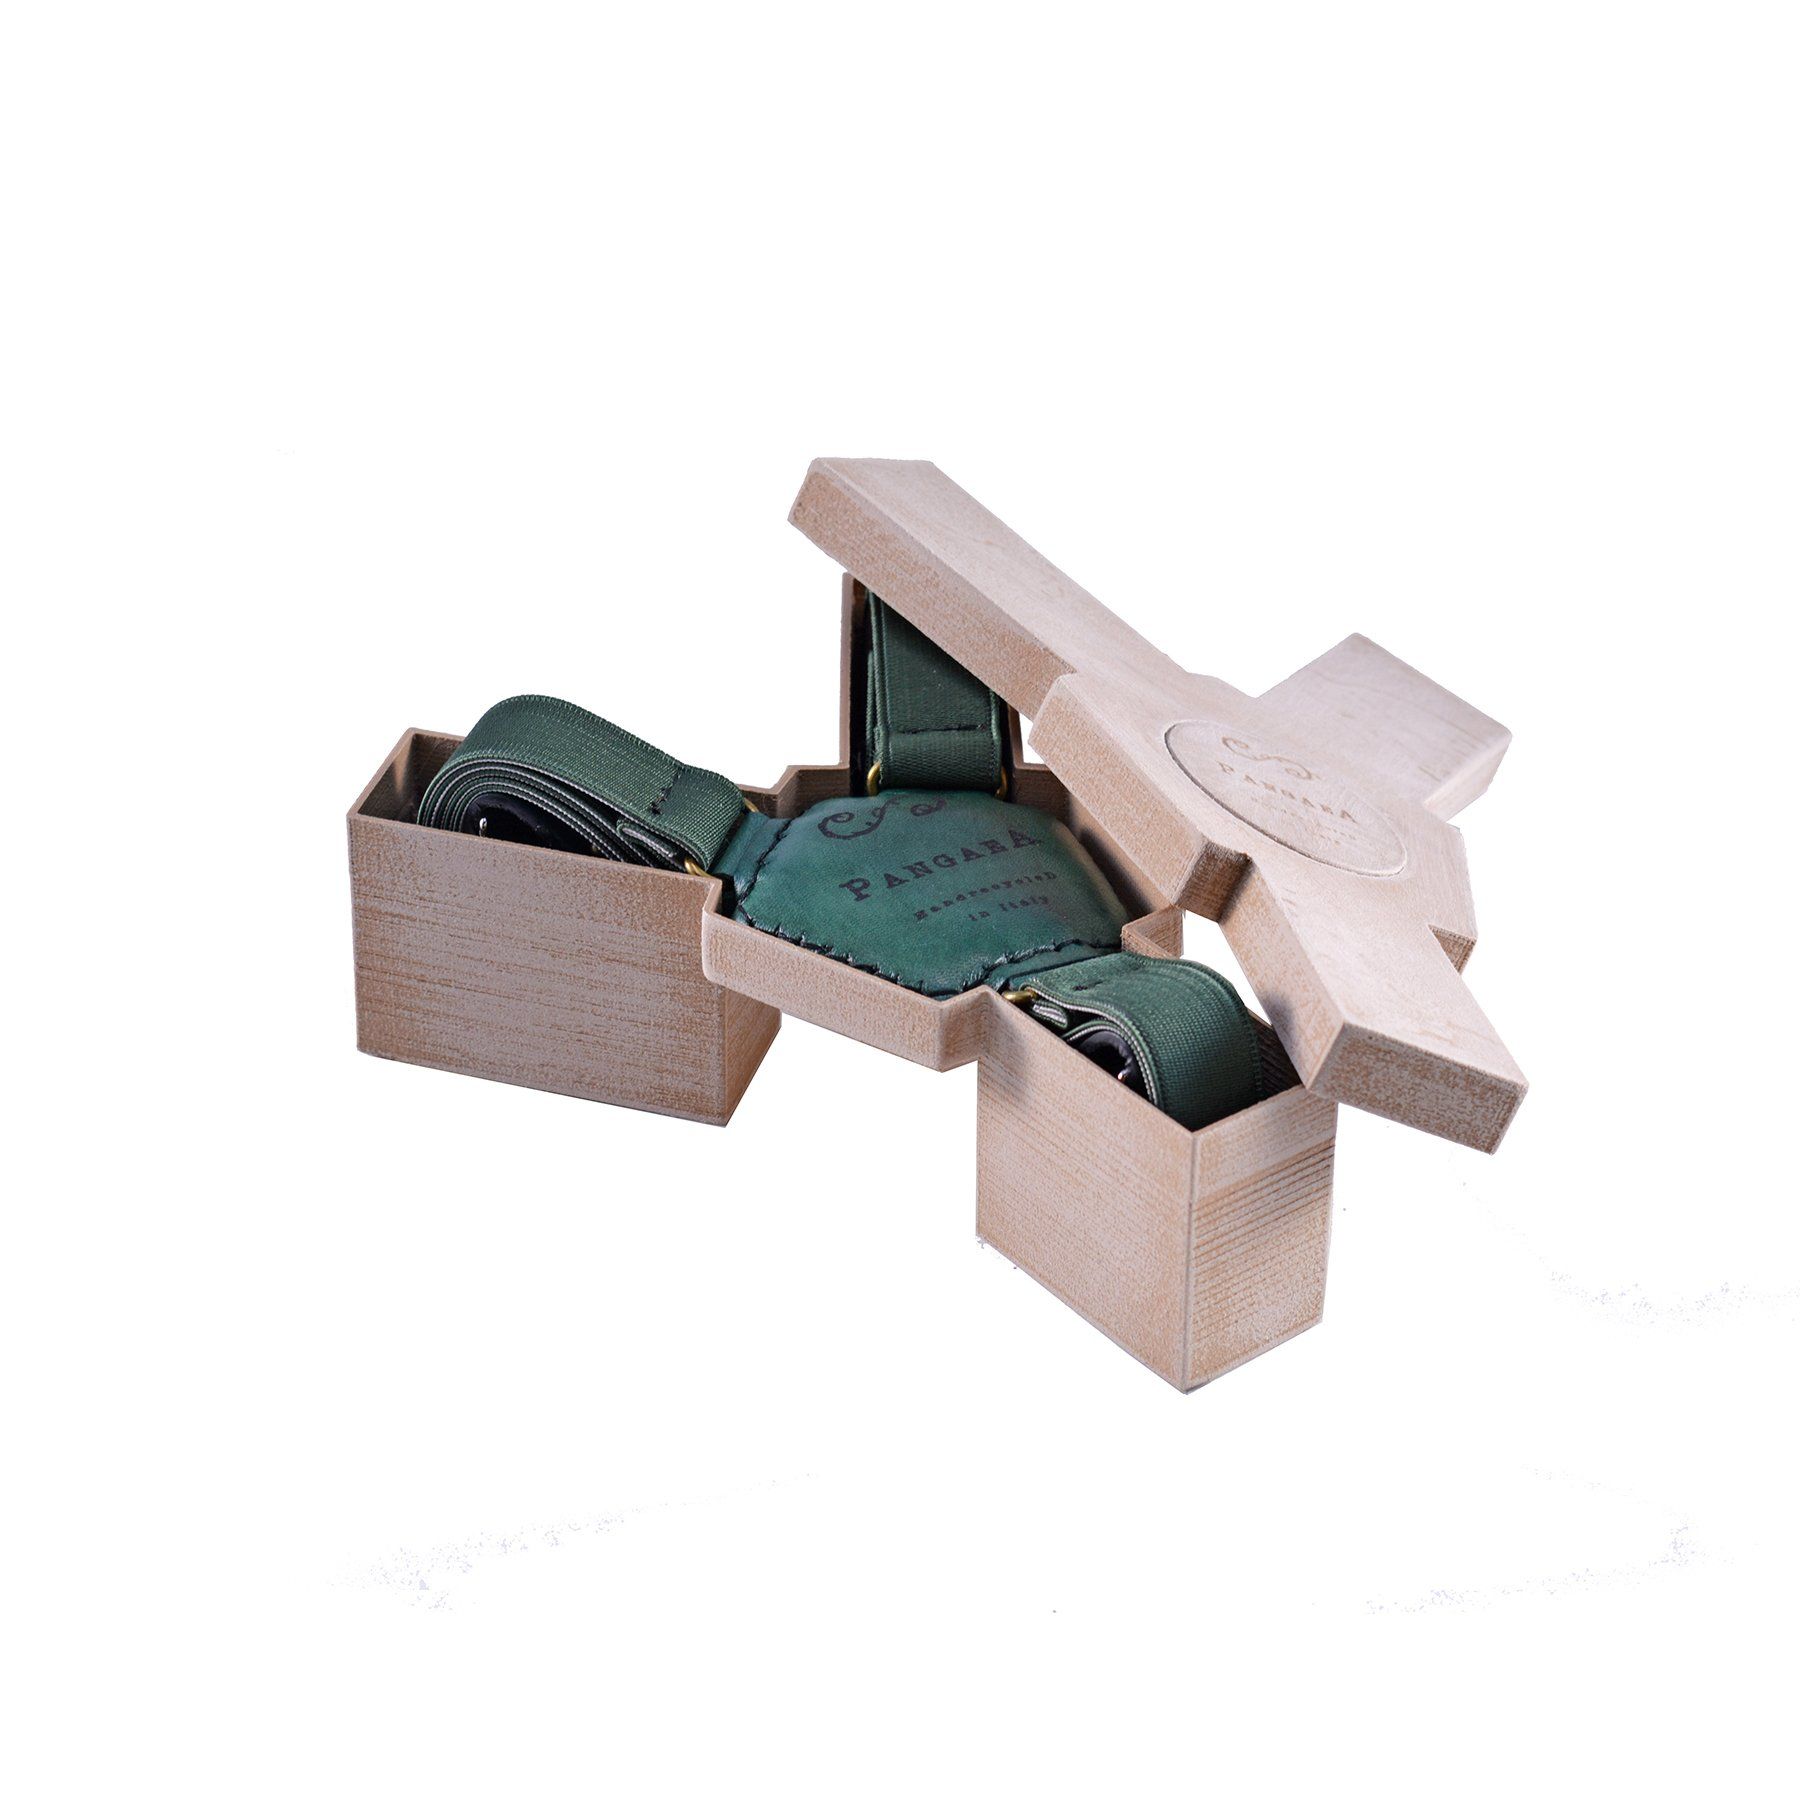 pangaea bretelle tiracche in pelle verde materiale riciclato scatola pla legno